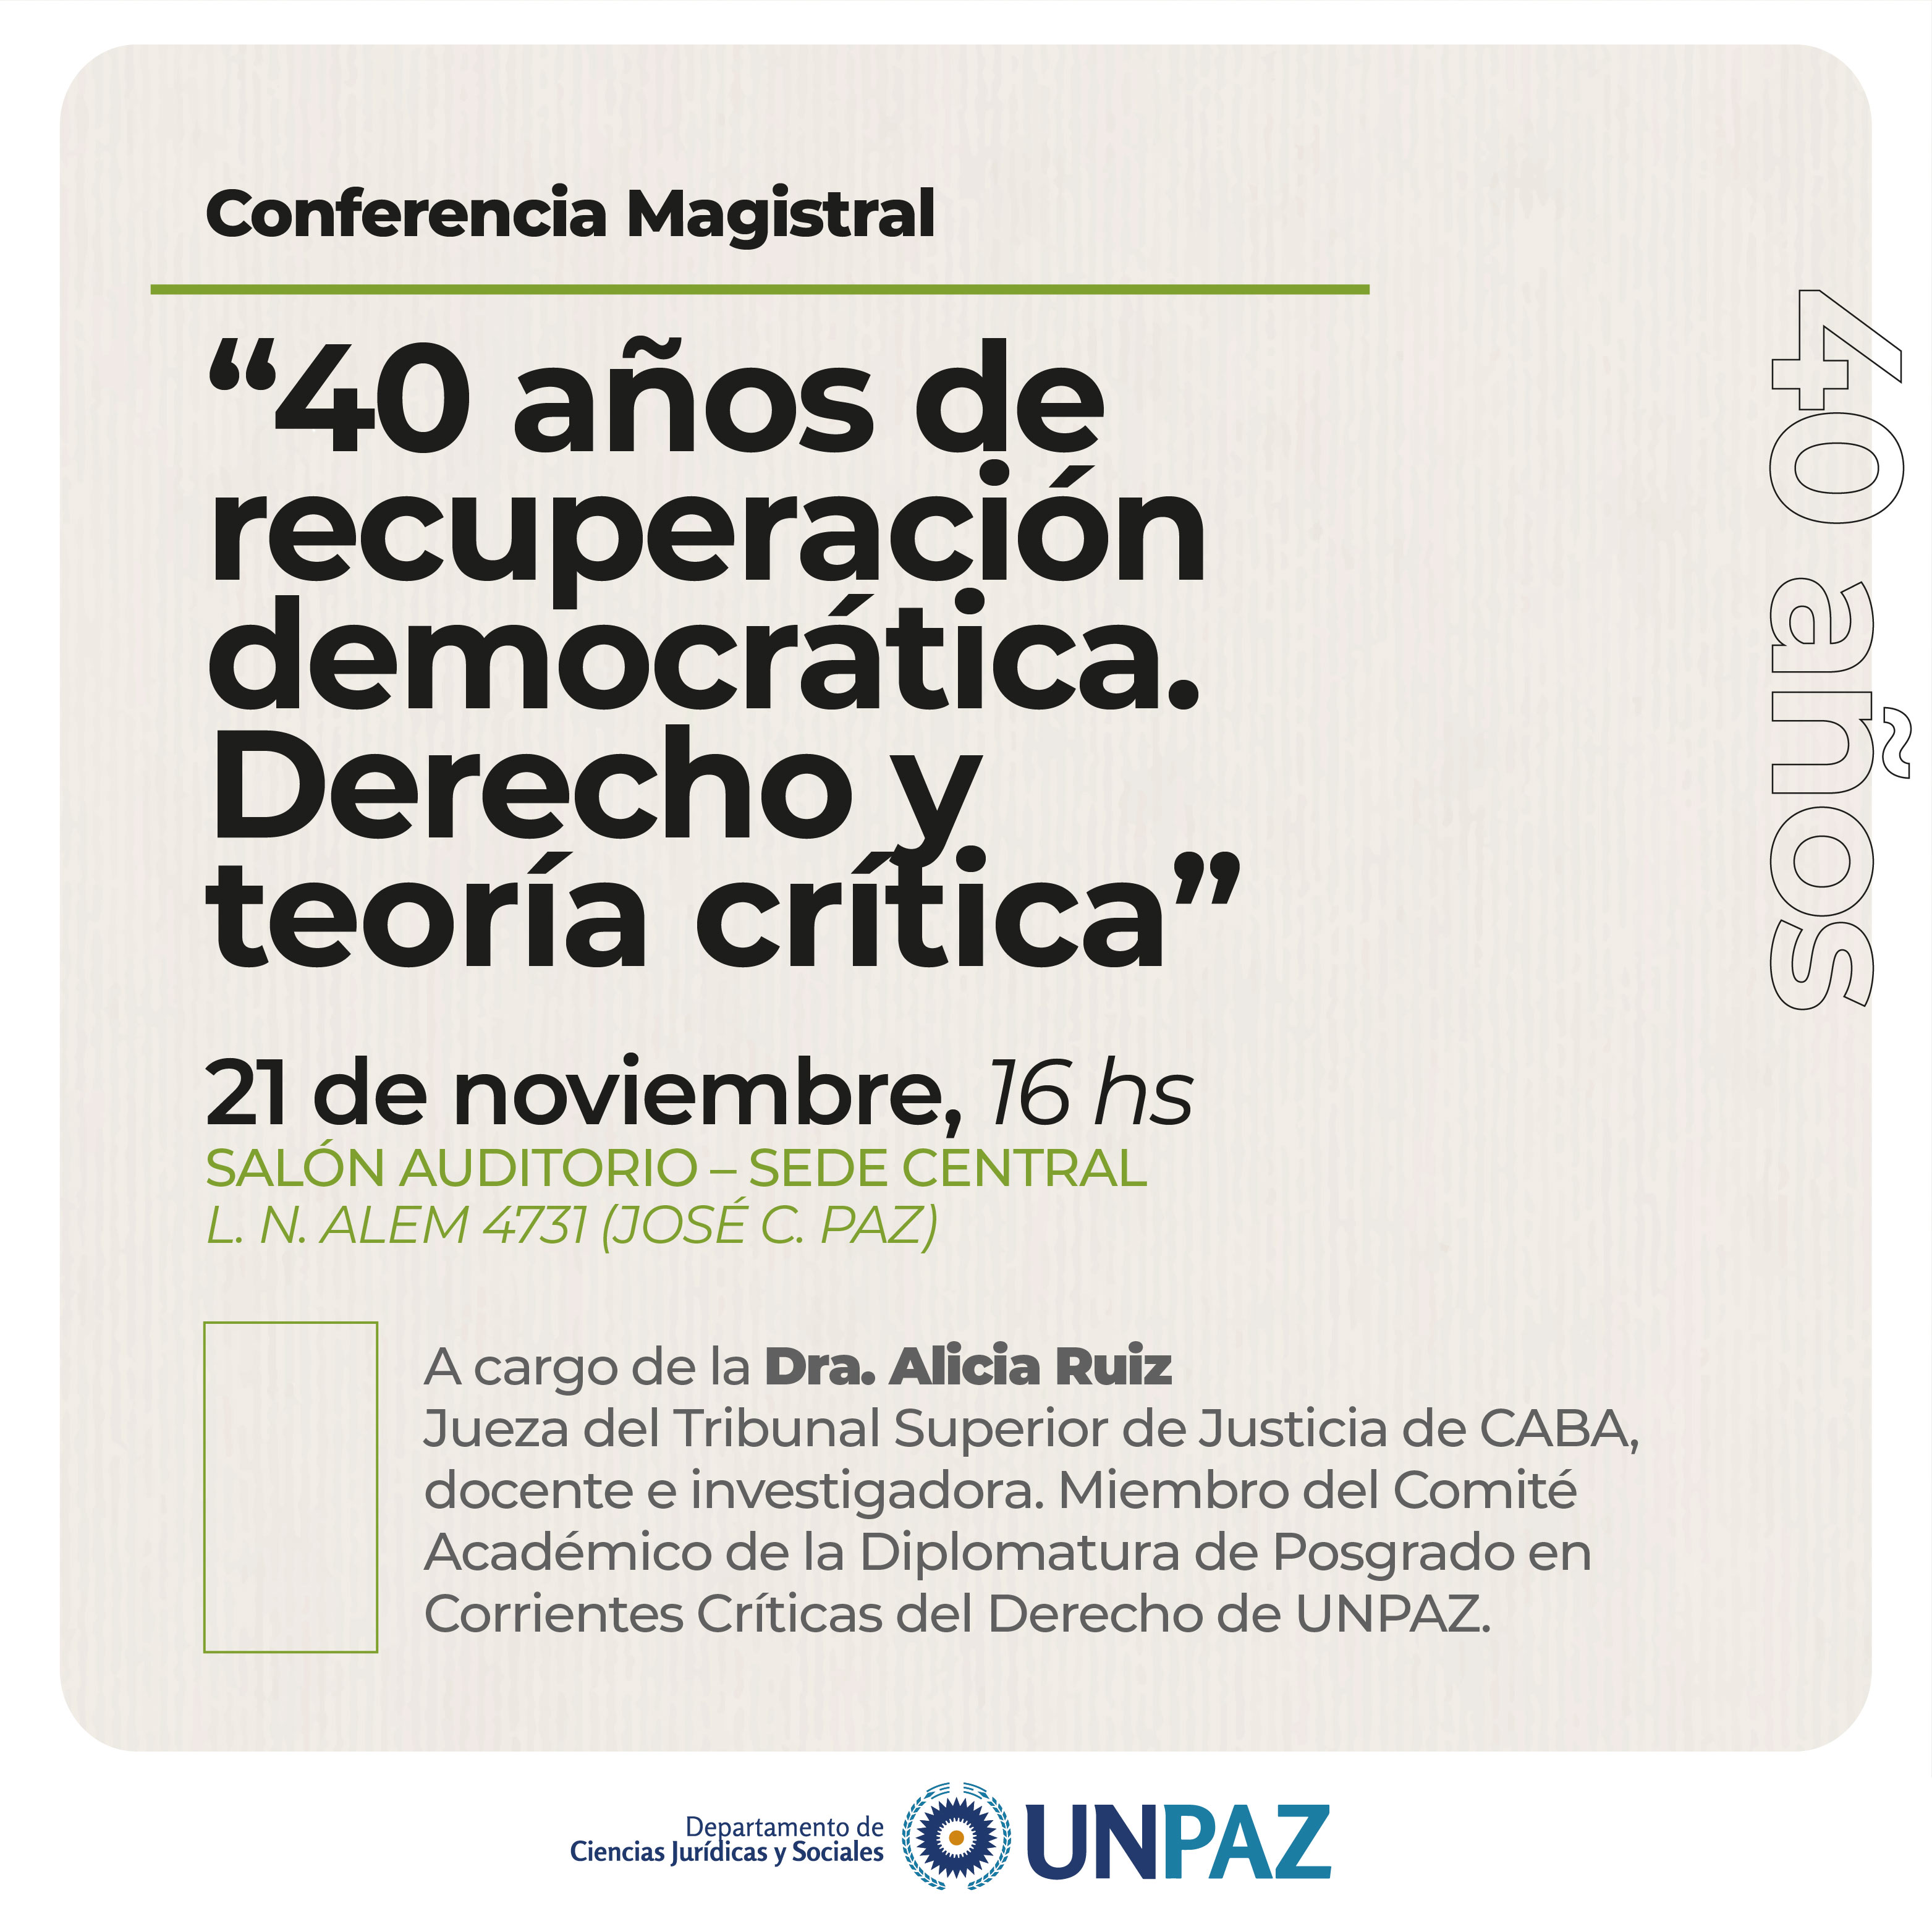 CONFERENCIA MAGISTRAL. “40 años de recuperación democrática. Derecho y teoría crítica”